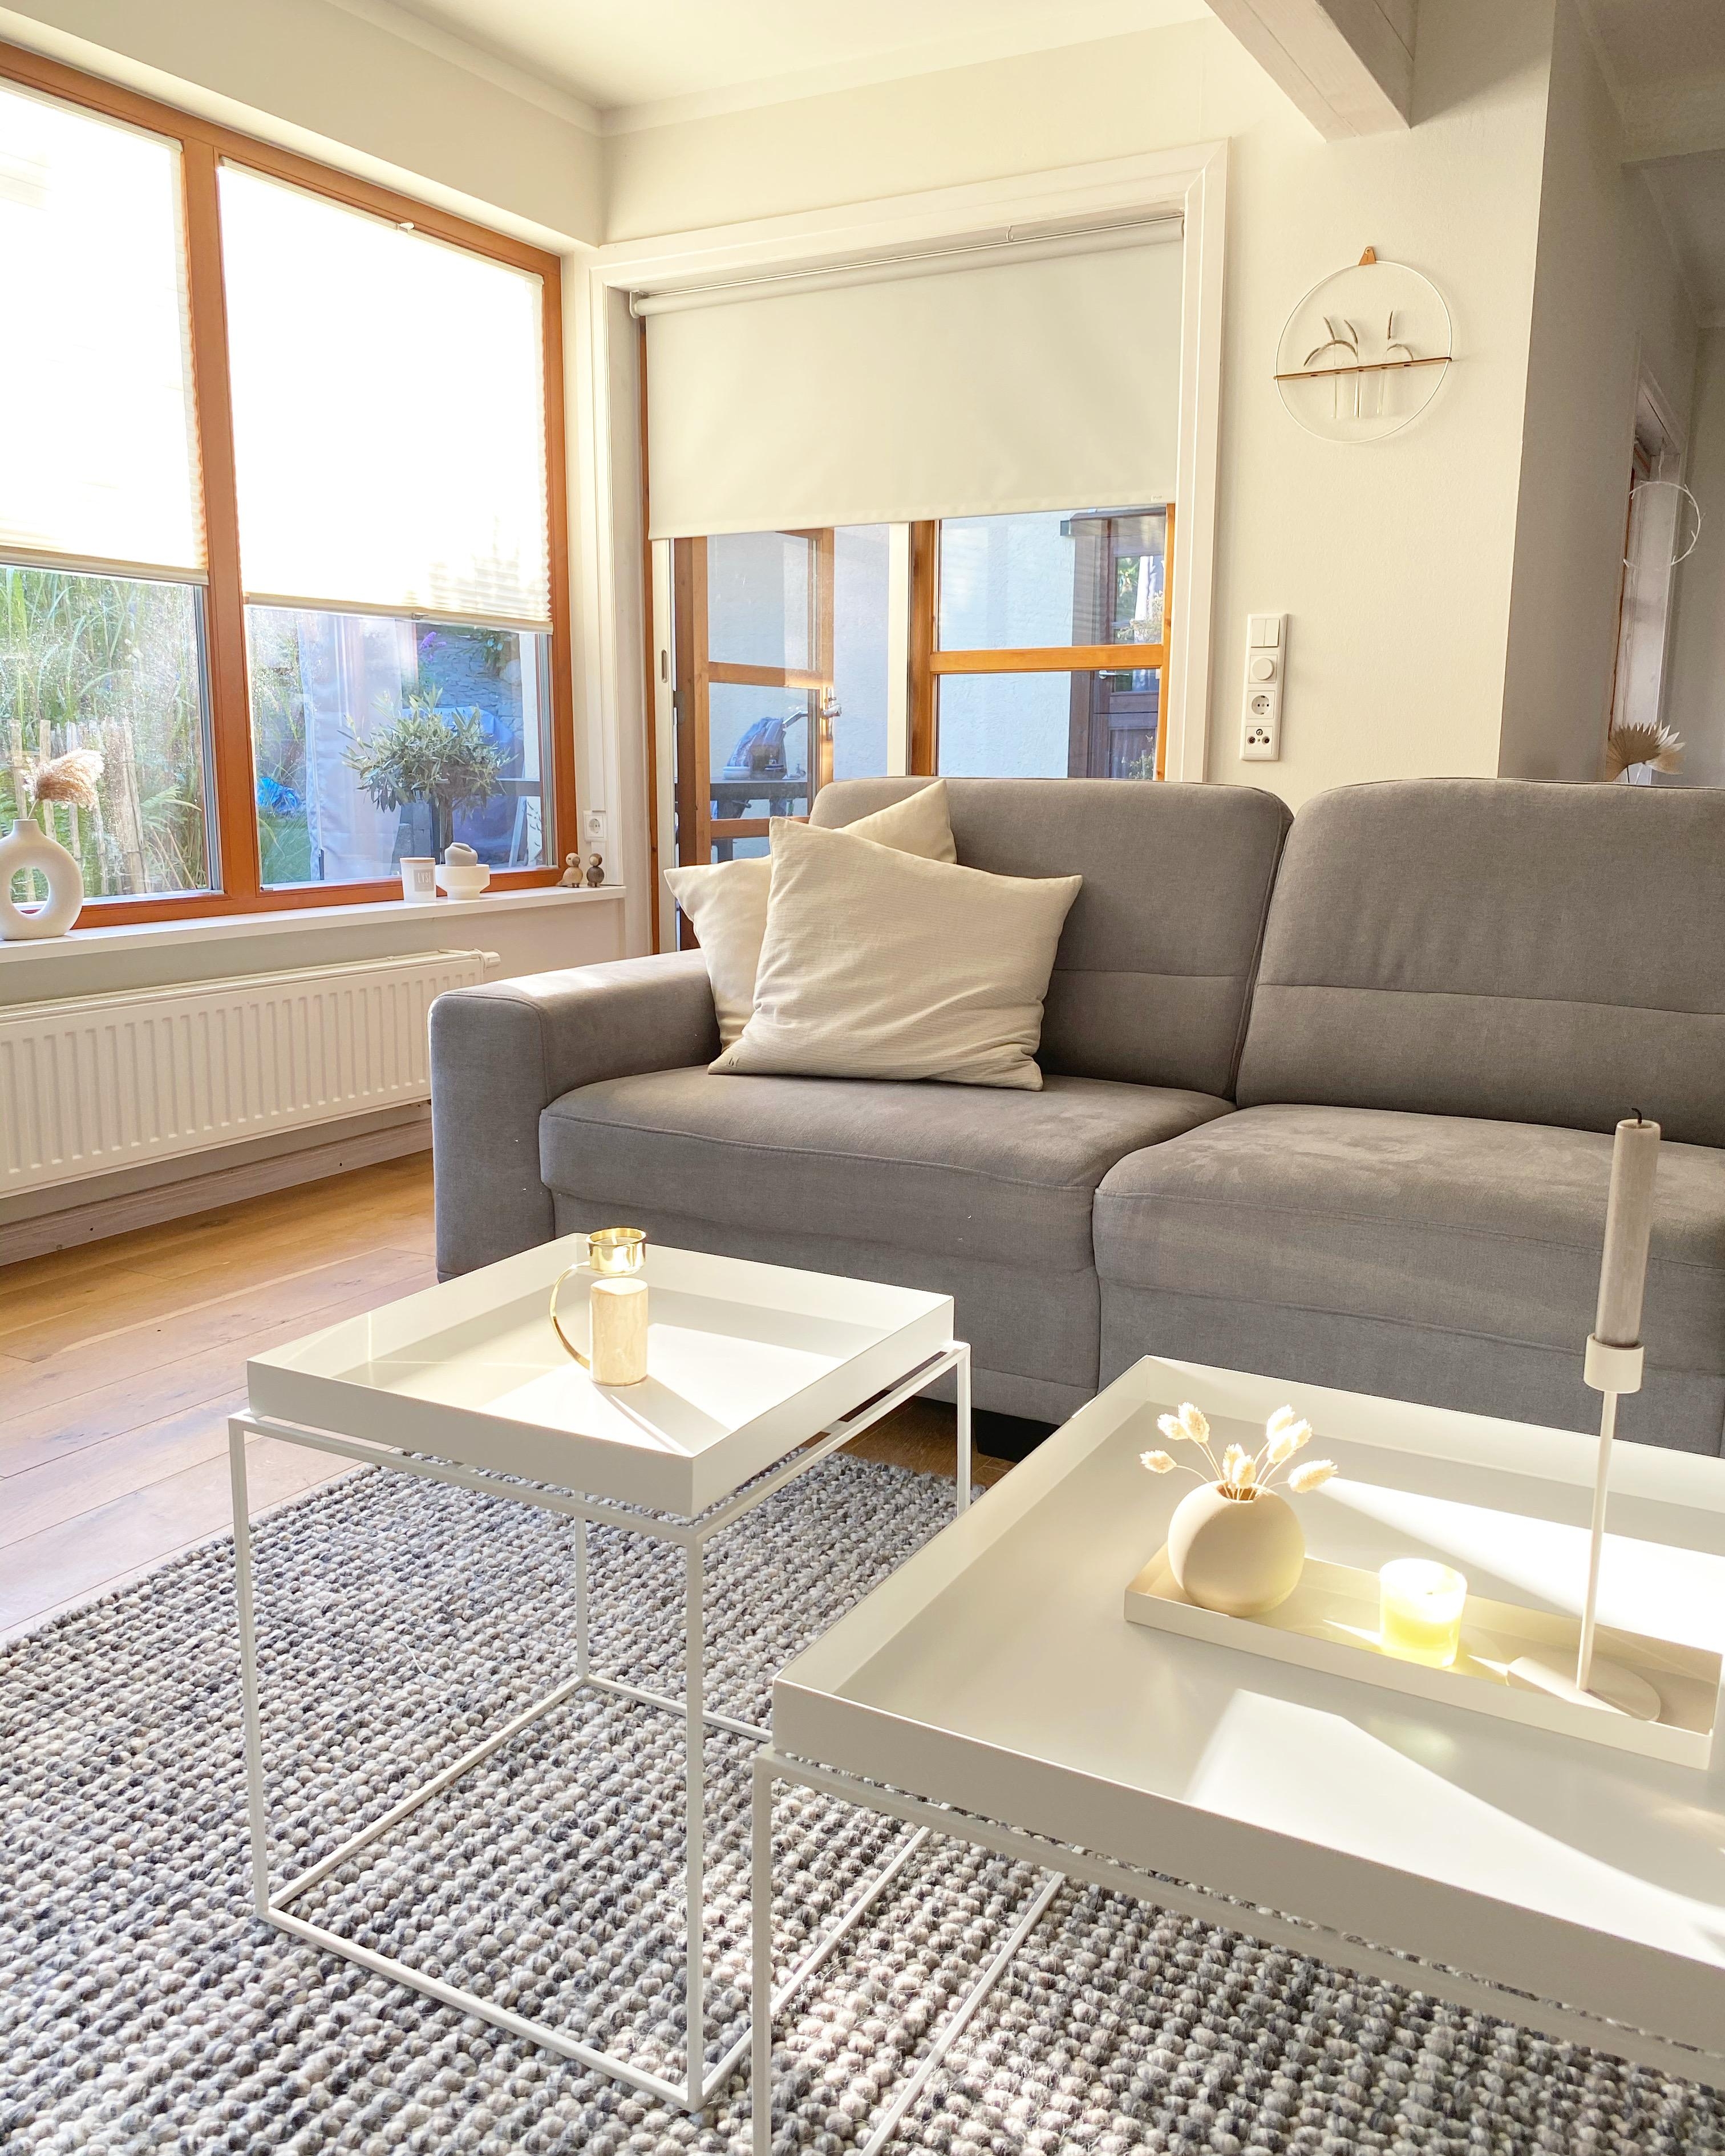 #sofa #wohnzimmer #holzhaus #scandistyle